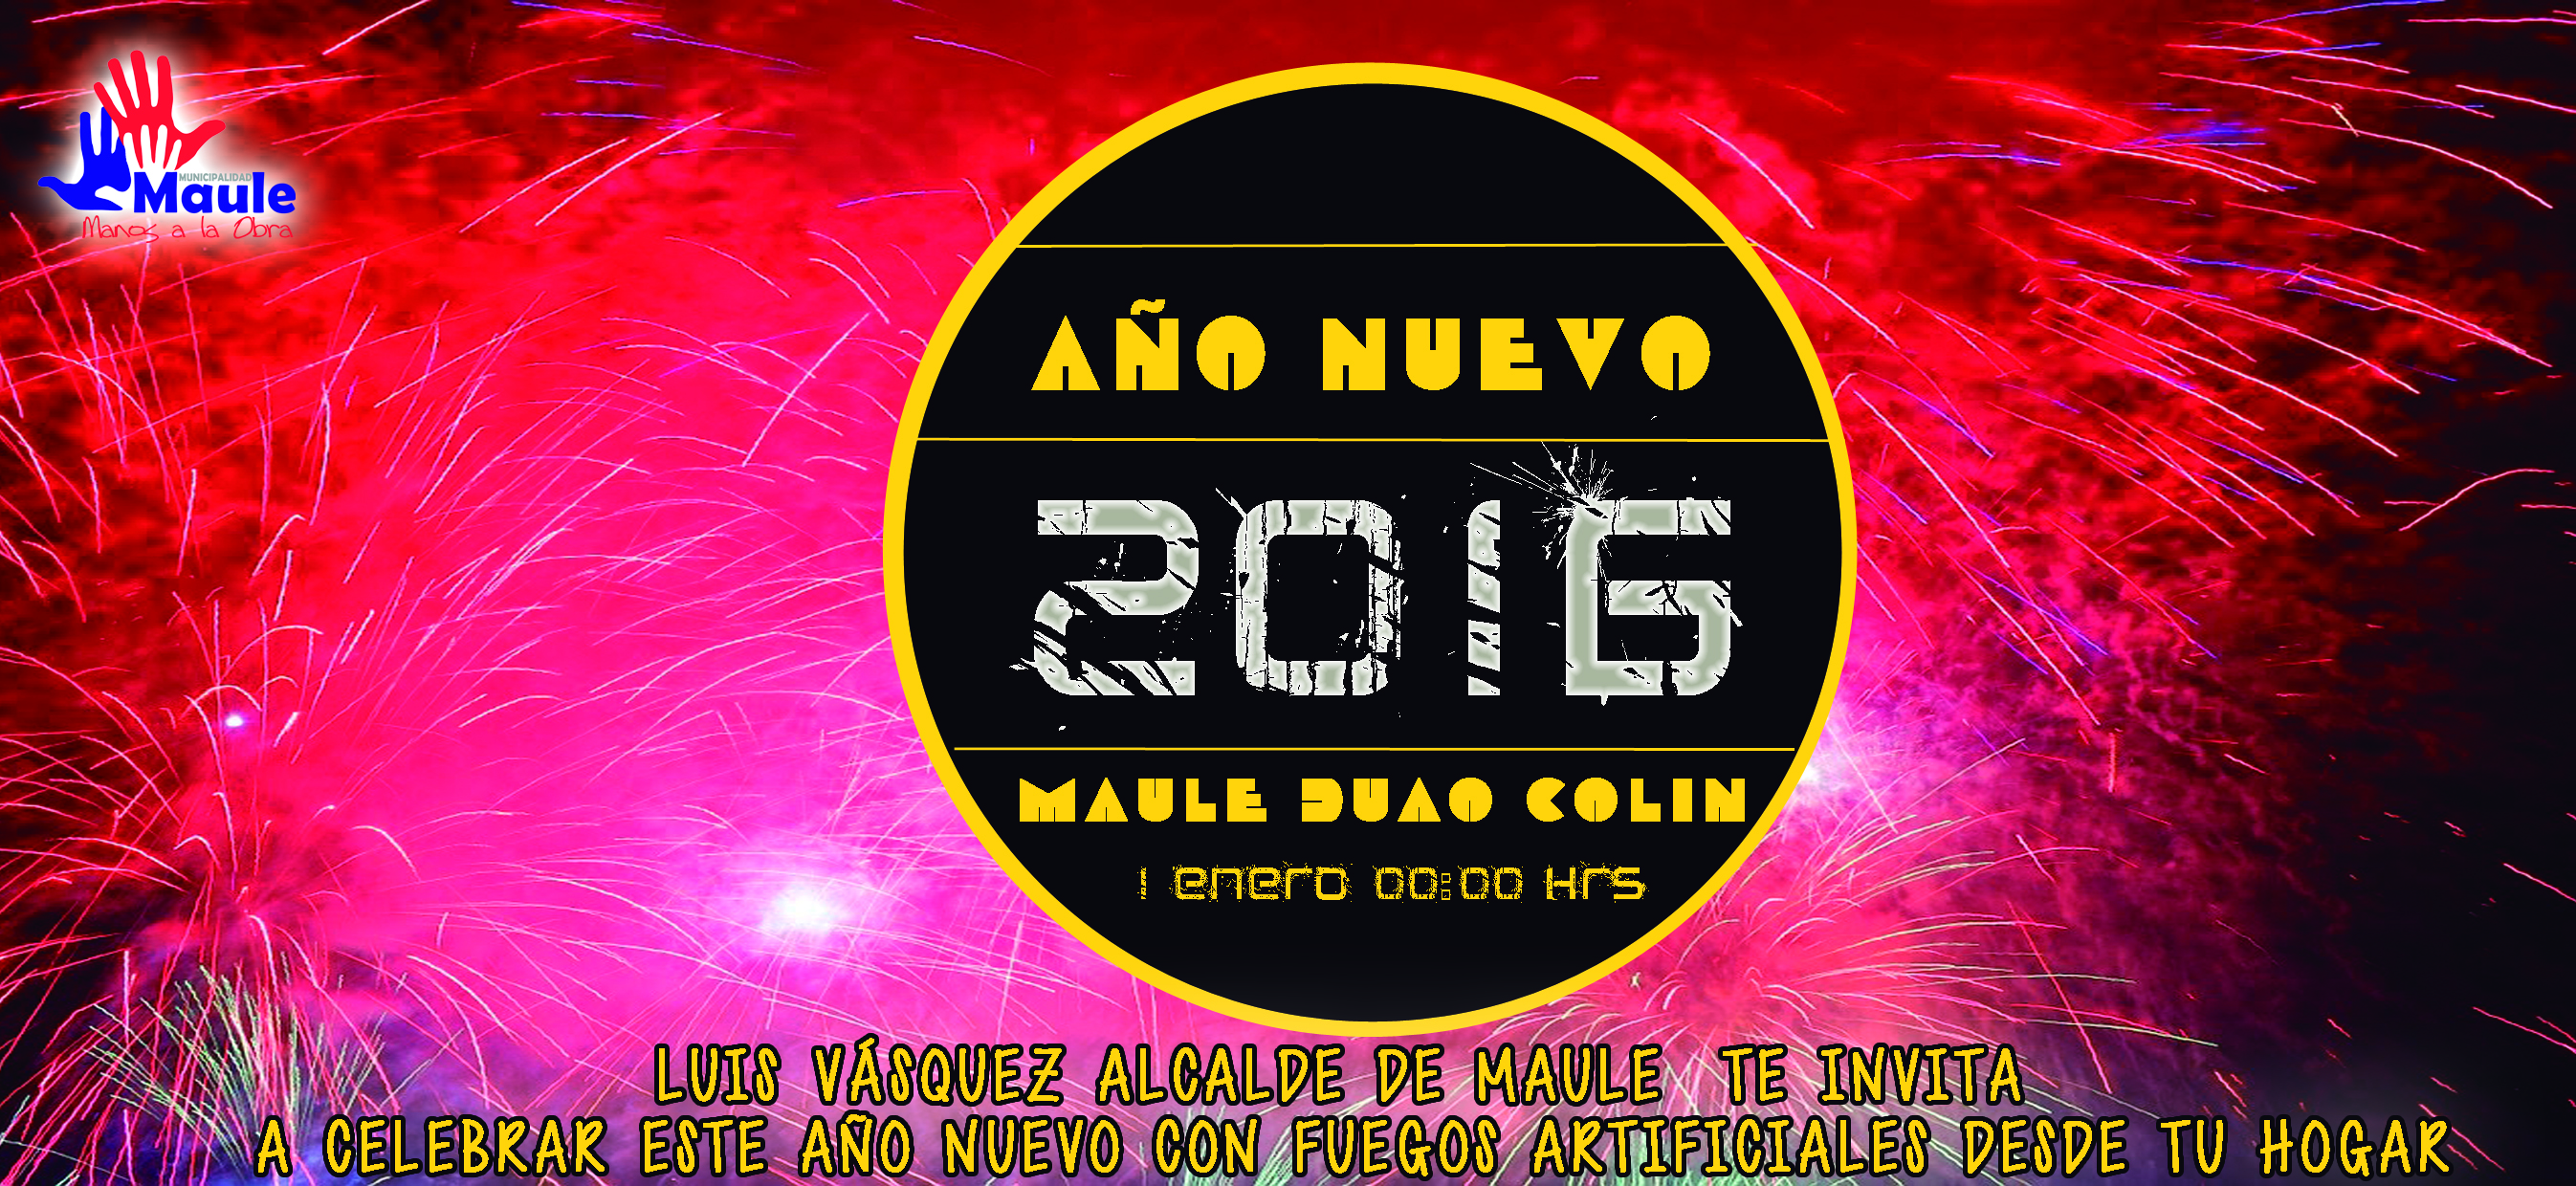 Maule recibirá 2016 con 3 show pirotécnicos